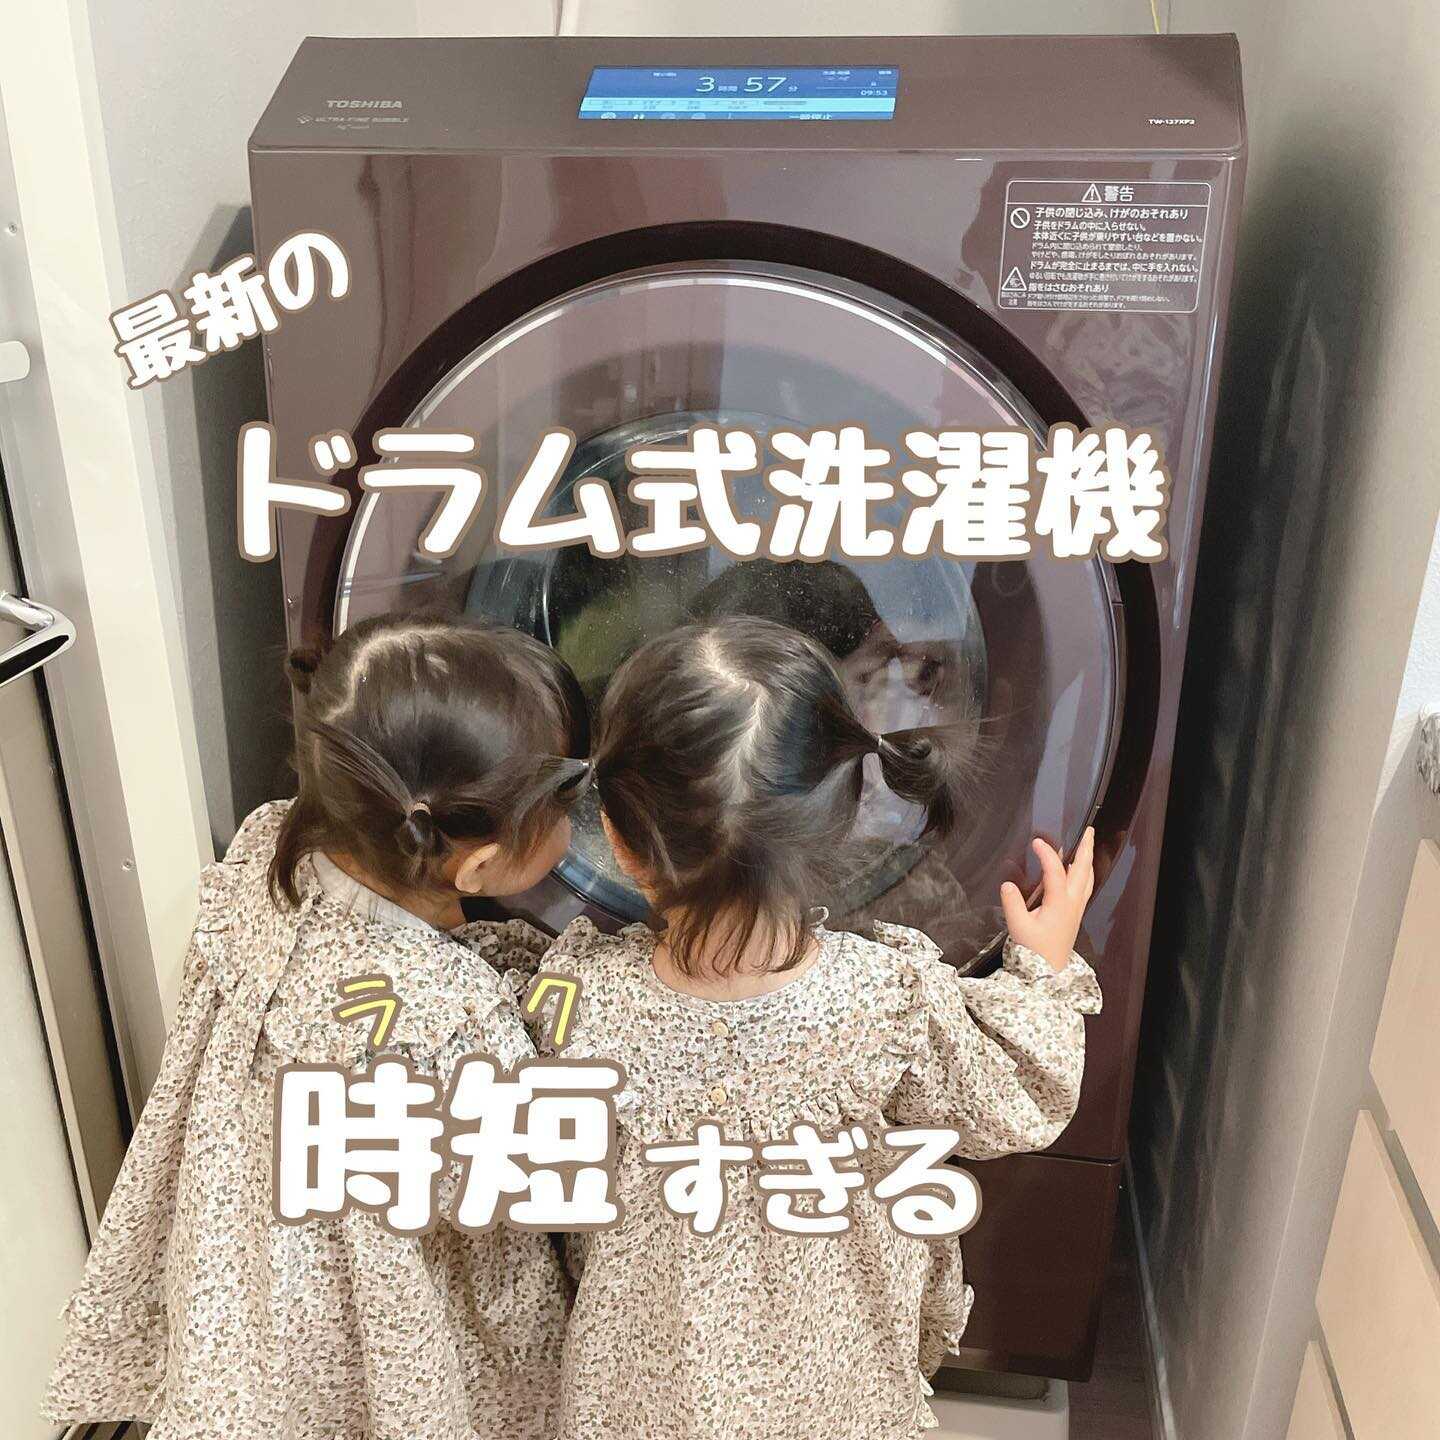 【分解洗浄済み】TOSHIBA 12KG ドラム式洗濯機 2020年製東芝ドラム式洗濯機